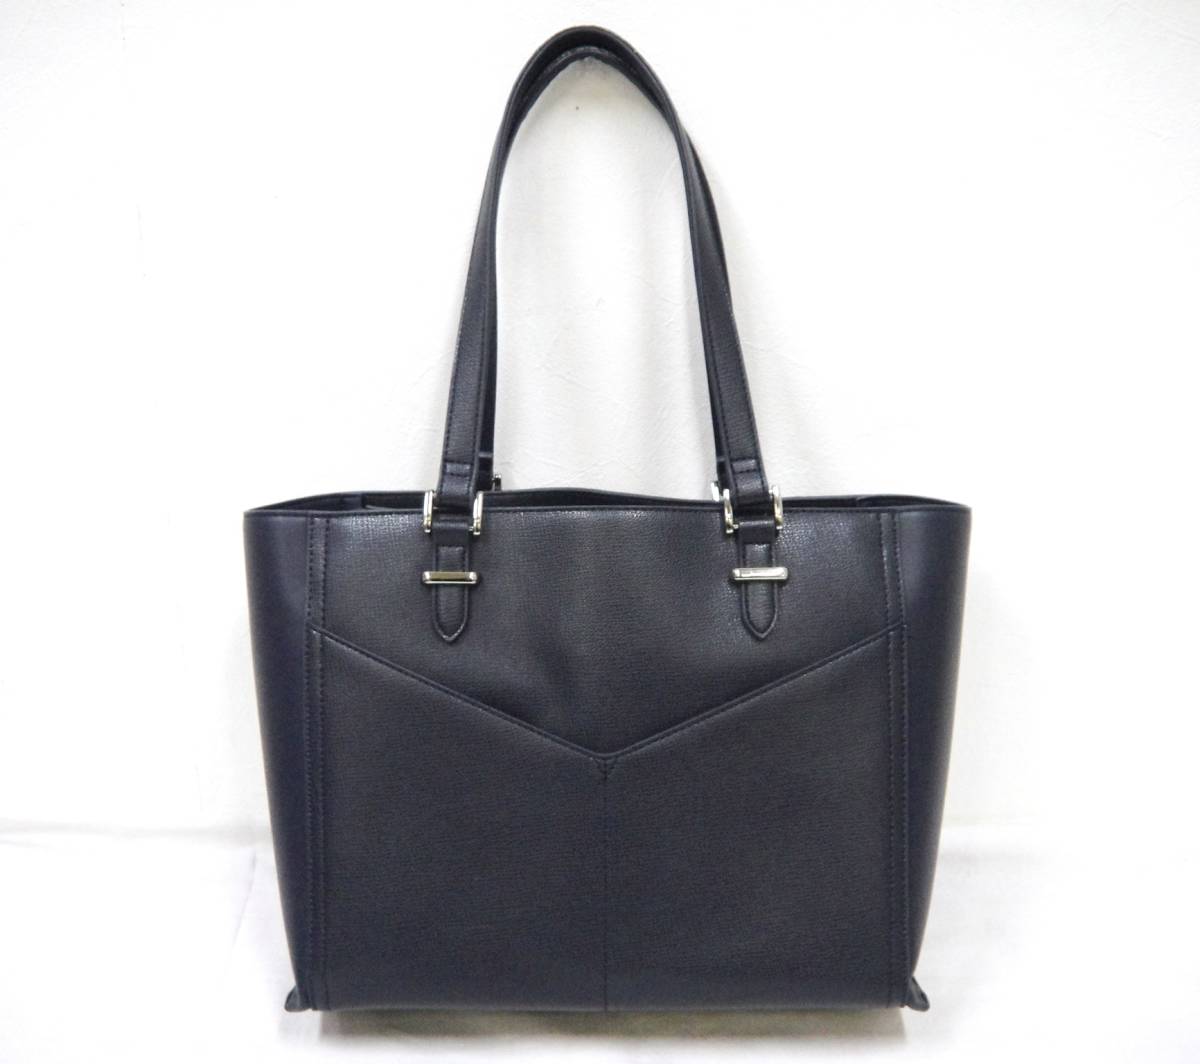 [BGA556]Reflect/ Reflect большая сумка темно-синий цвет темно-синий искусственная кожа сумка для хранения имеется женский б/у товар used